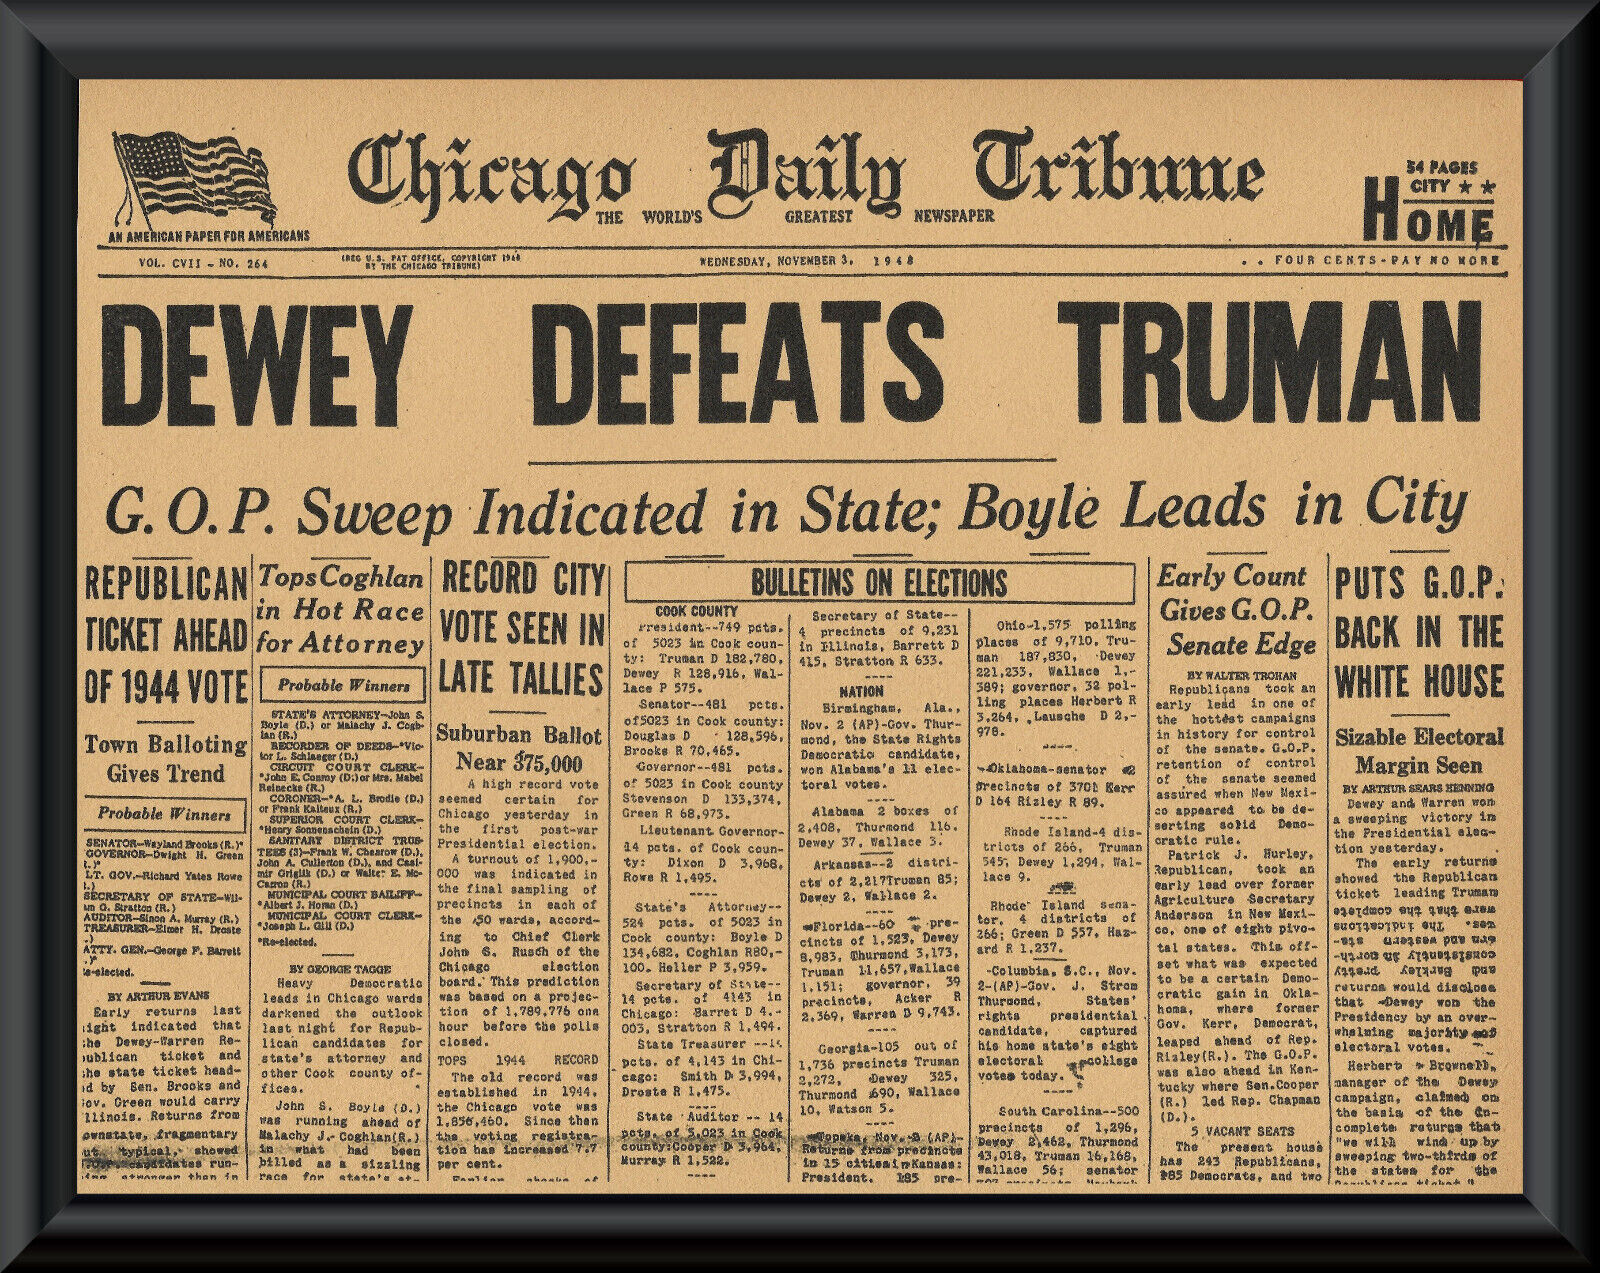 1948 Dewey Defeats Truman Error Newspaper Cover Reprint On Old Paper 8 1/2 x 11